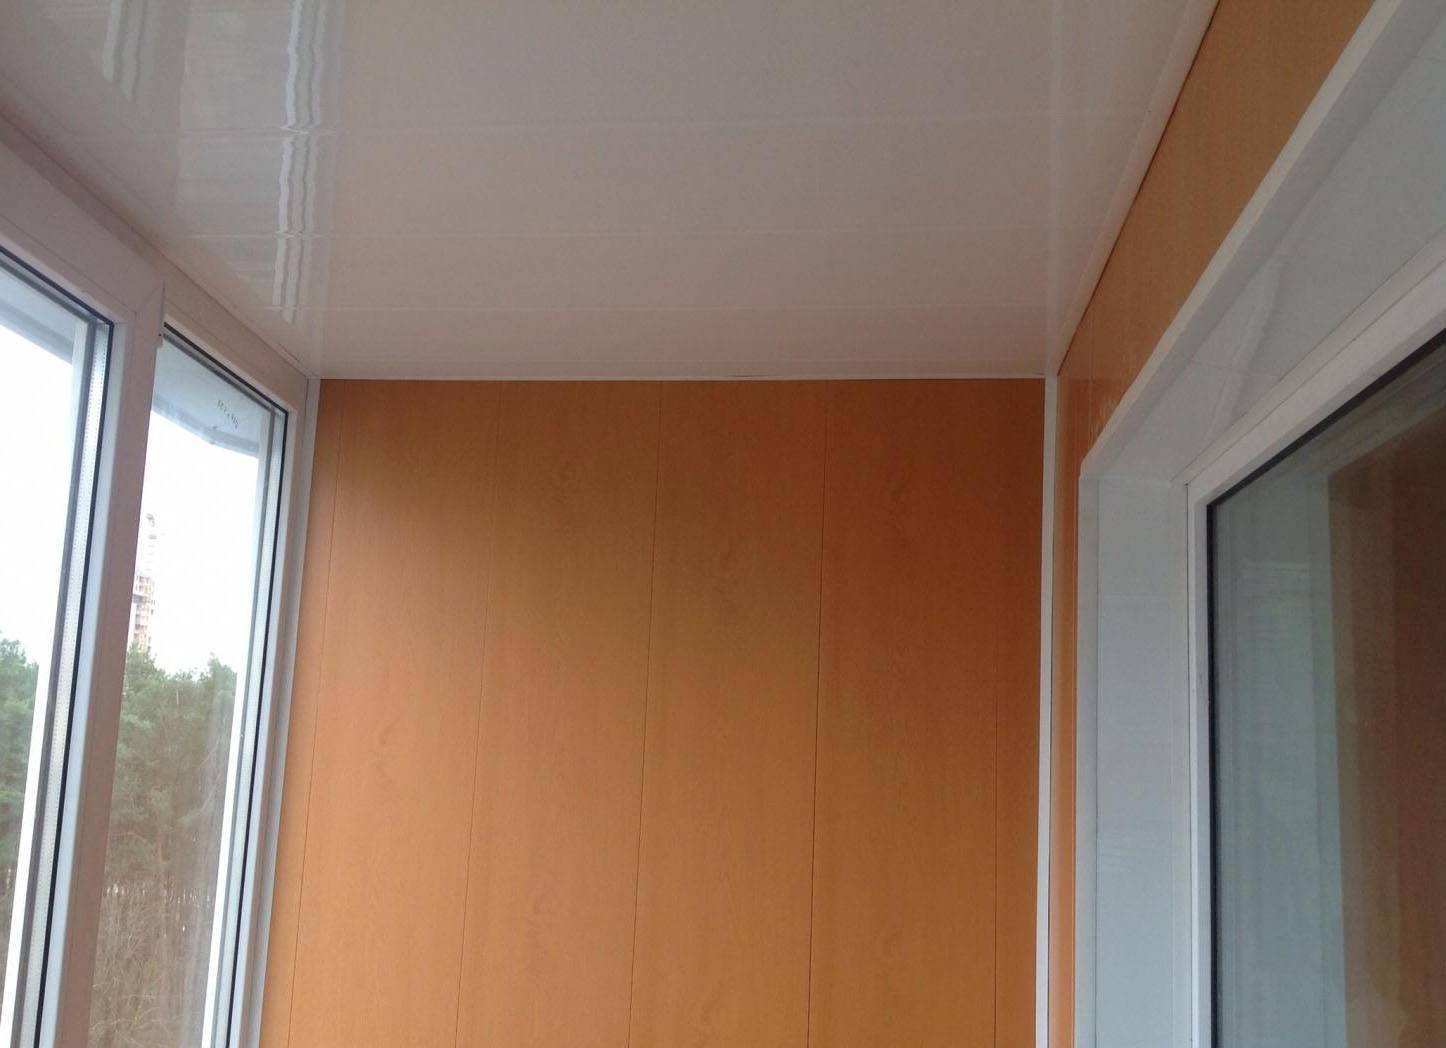 Как закрепить панели пвх на потолке и крепление обшивки на балконе пластиковой